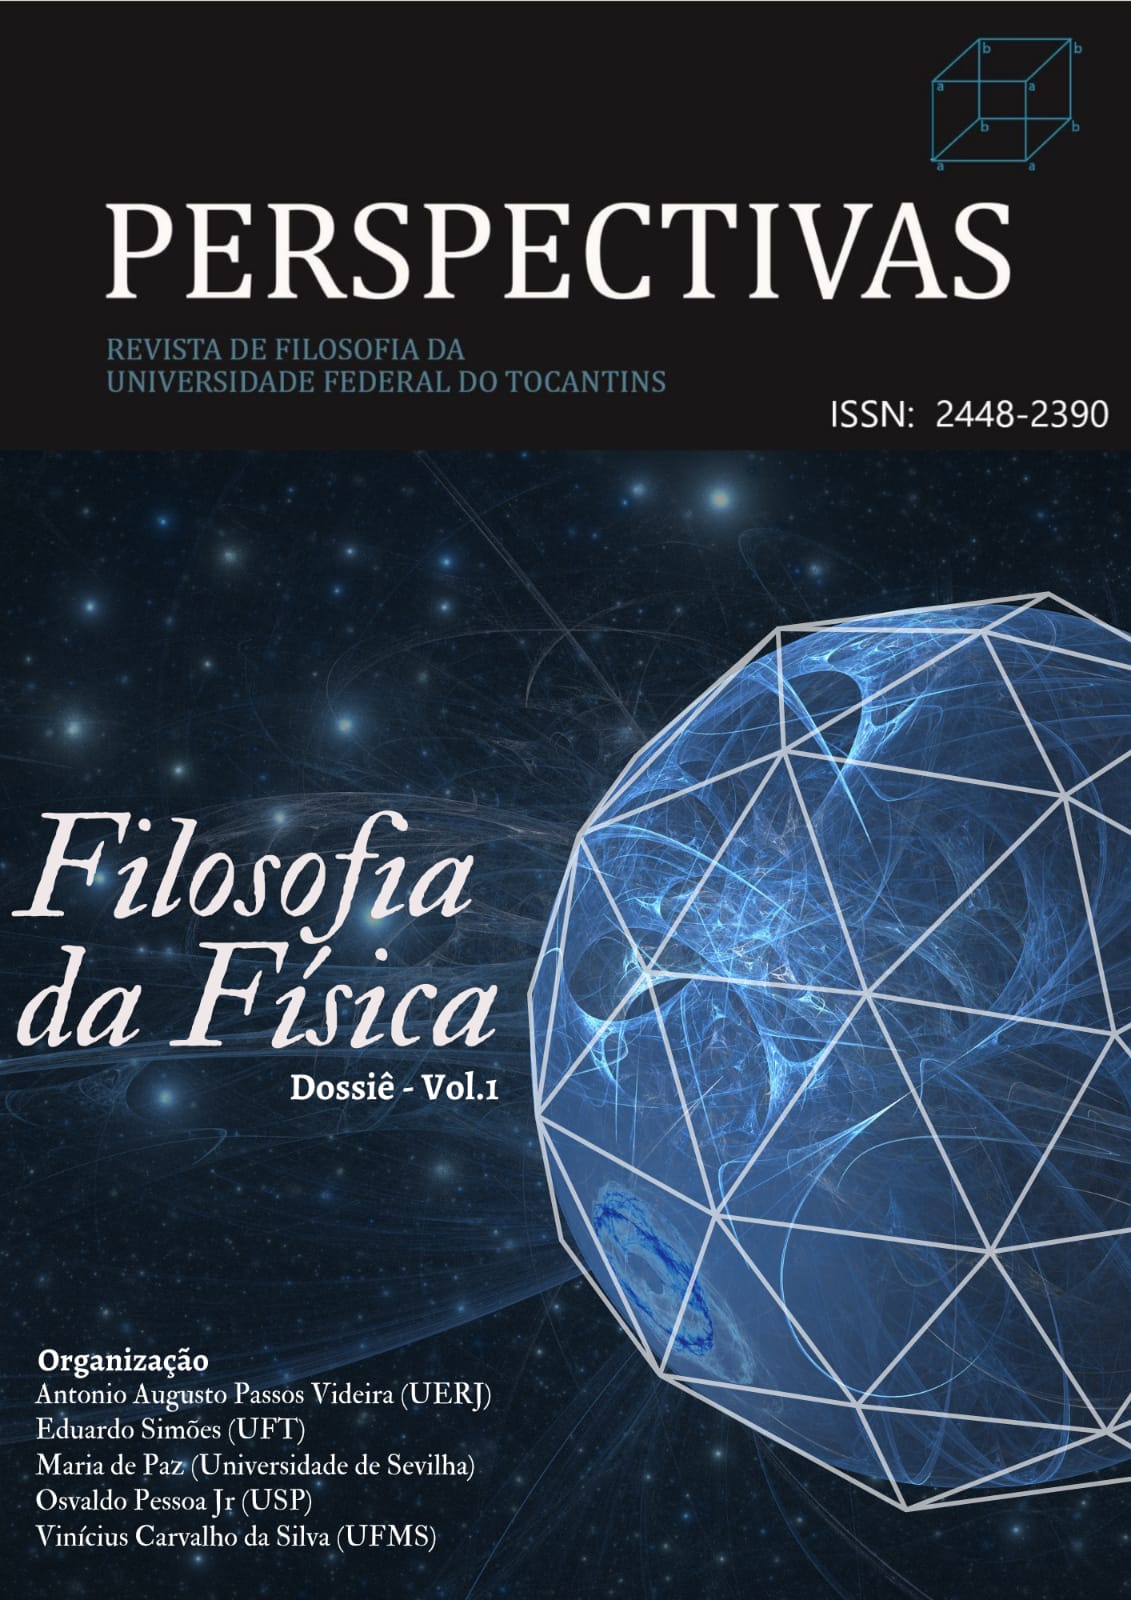 					Visualizar v. 7 n. 2 (2022): Dossiê Filosofia da Física - Vol. 1
				